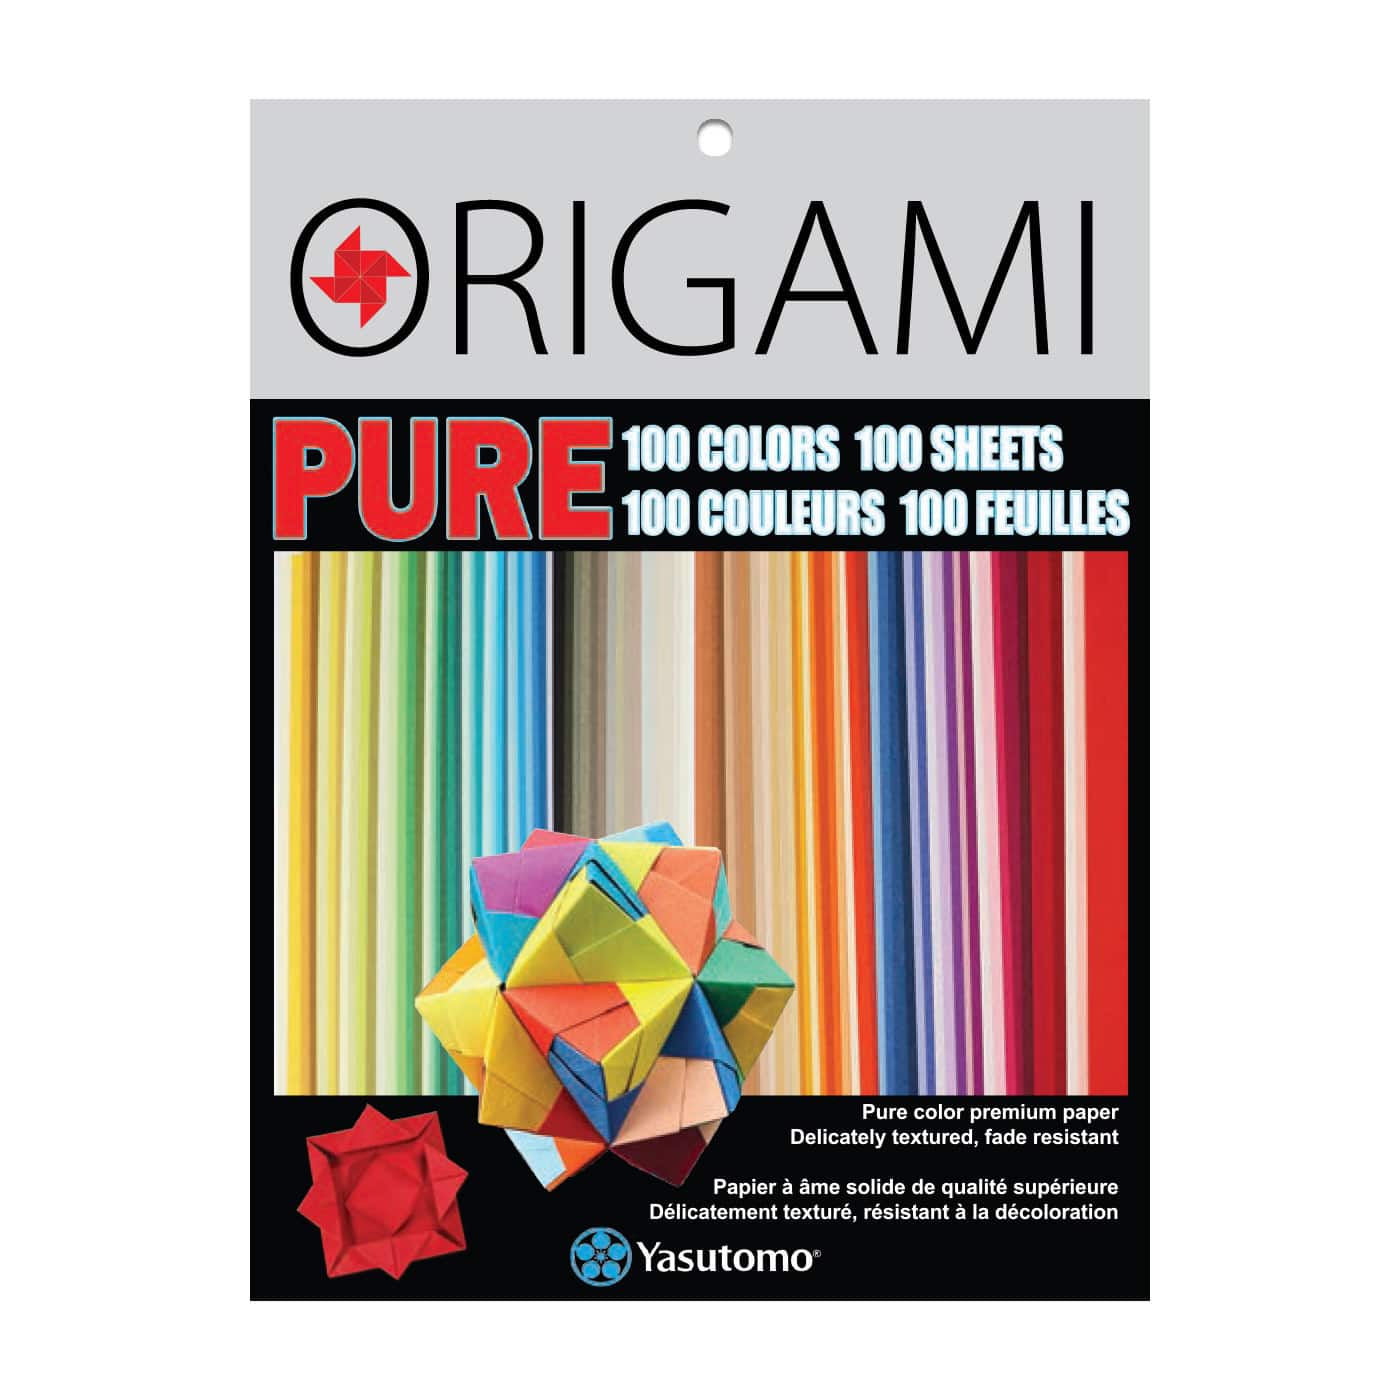 Folia Origami Paper Colored 8x8